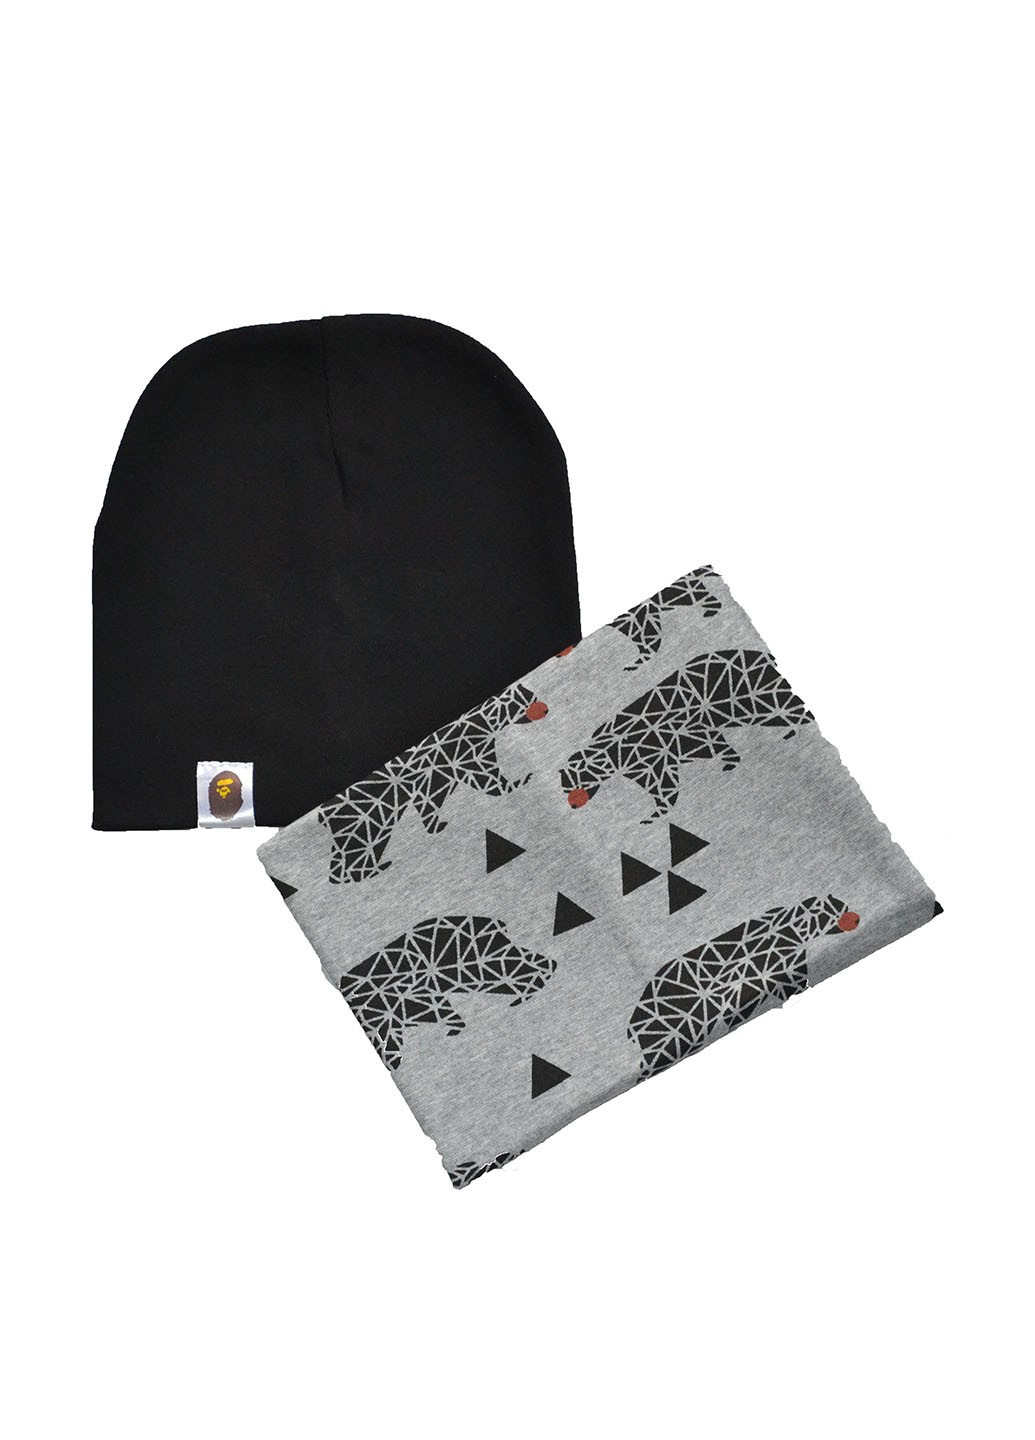 Комплект (шапка, шарф-снуд) Sweet Hats шапка + шарф-снуд рисунки комбинированные кэжуалы трикотаж